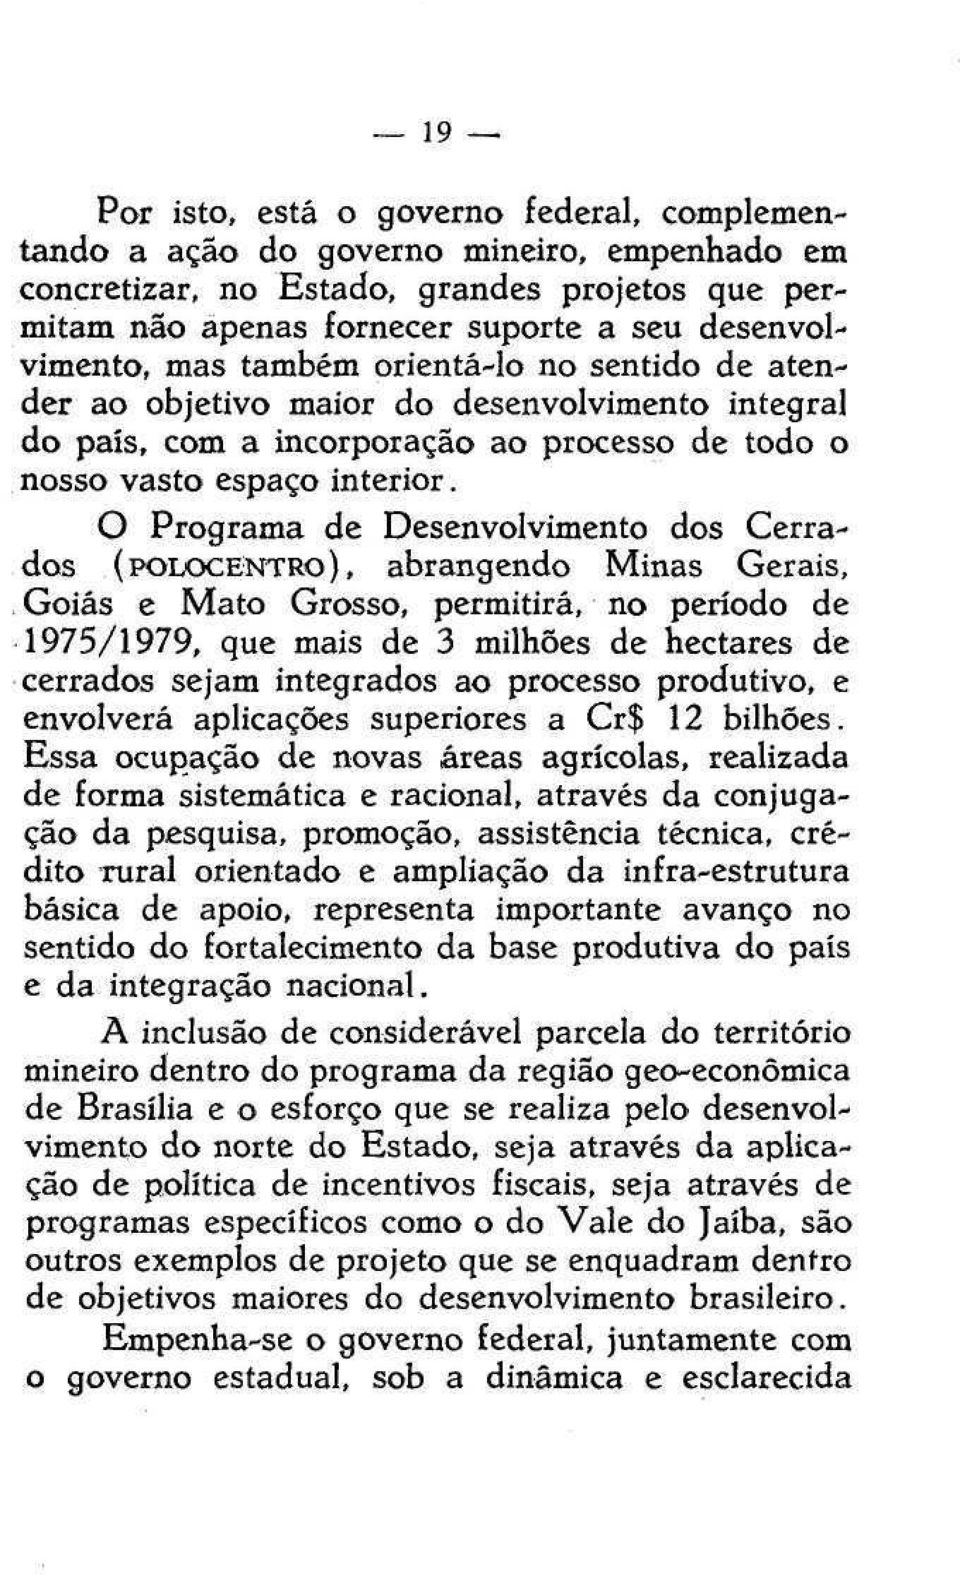 O Programa de Desenvolvimento dos Cerrados (POLOCENTRO), abrangendo Minas Gerais, Goiás e Mato Grosso, permitirá, no período de 1975/1979, que mais de 3 milhões de hectares de cerrados sejam